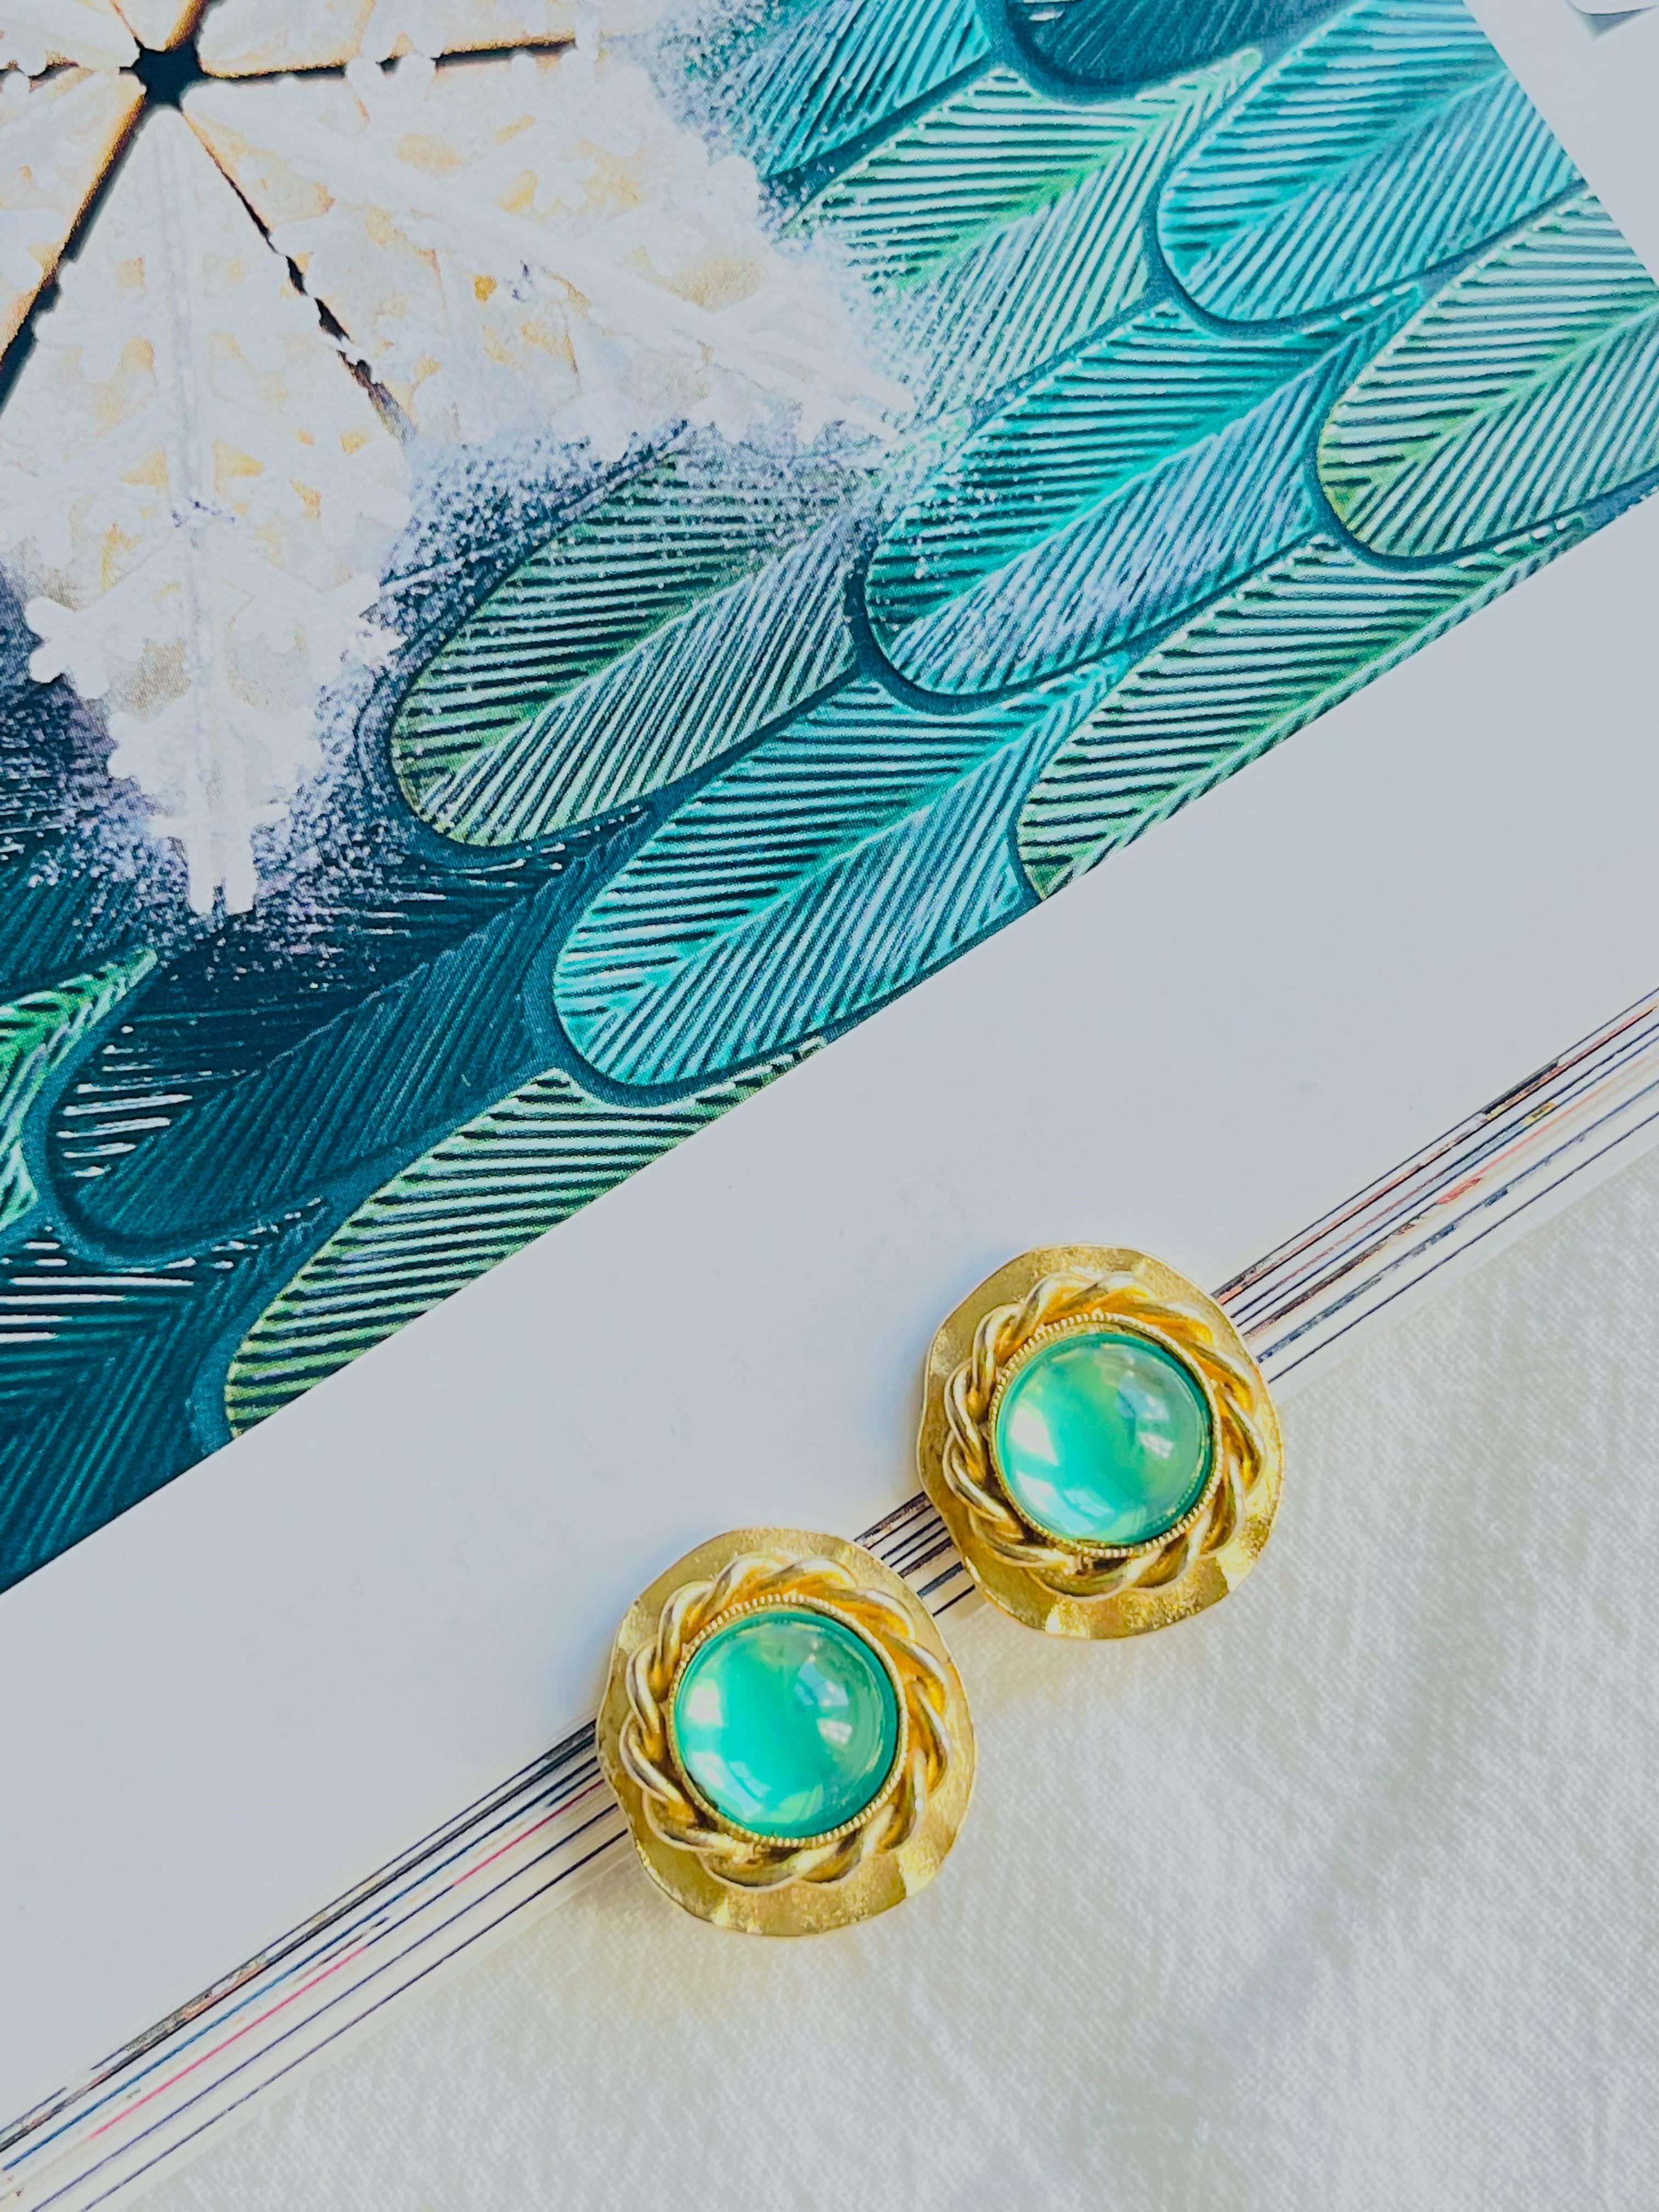 Givenchy Vintage 1980s Grüne Kristalle Smaragd Gripoix Welle Seil Clip Ohrringe, Gold-Ton

Sehr guter Zustand. Besonderes Design. Selten zu finden. 100% echt.

Givenchy Signiert deutlich auf der Rückseite eines Ohrrings.

Größe: 1,8*1,8